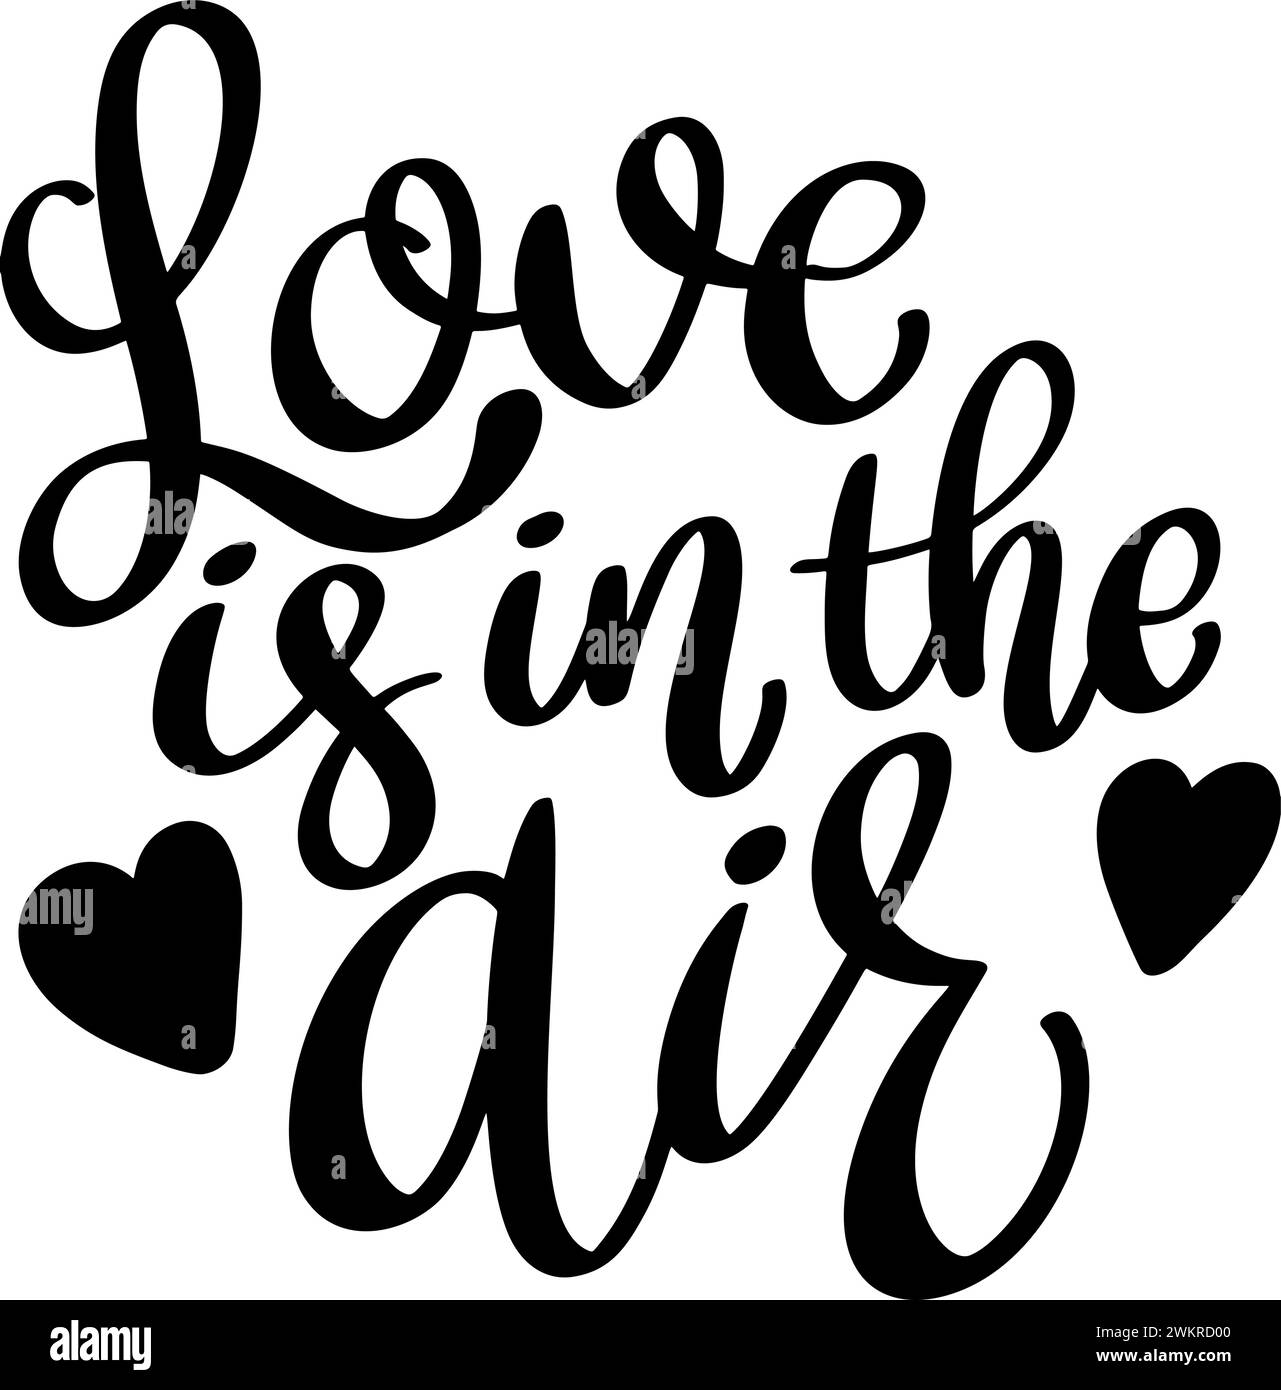 L'amore è nell'aria. Frase scritta isolata su sfondo bianco. Illustrazione Vettoriale